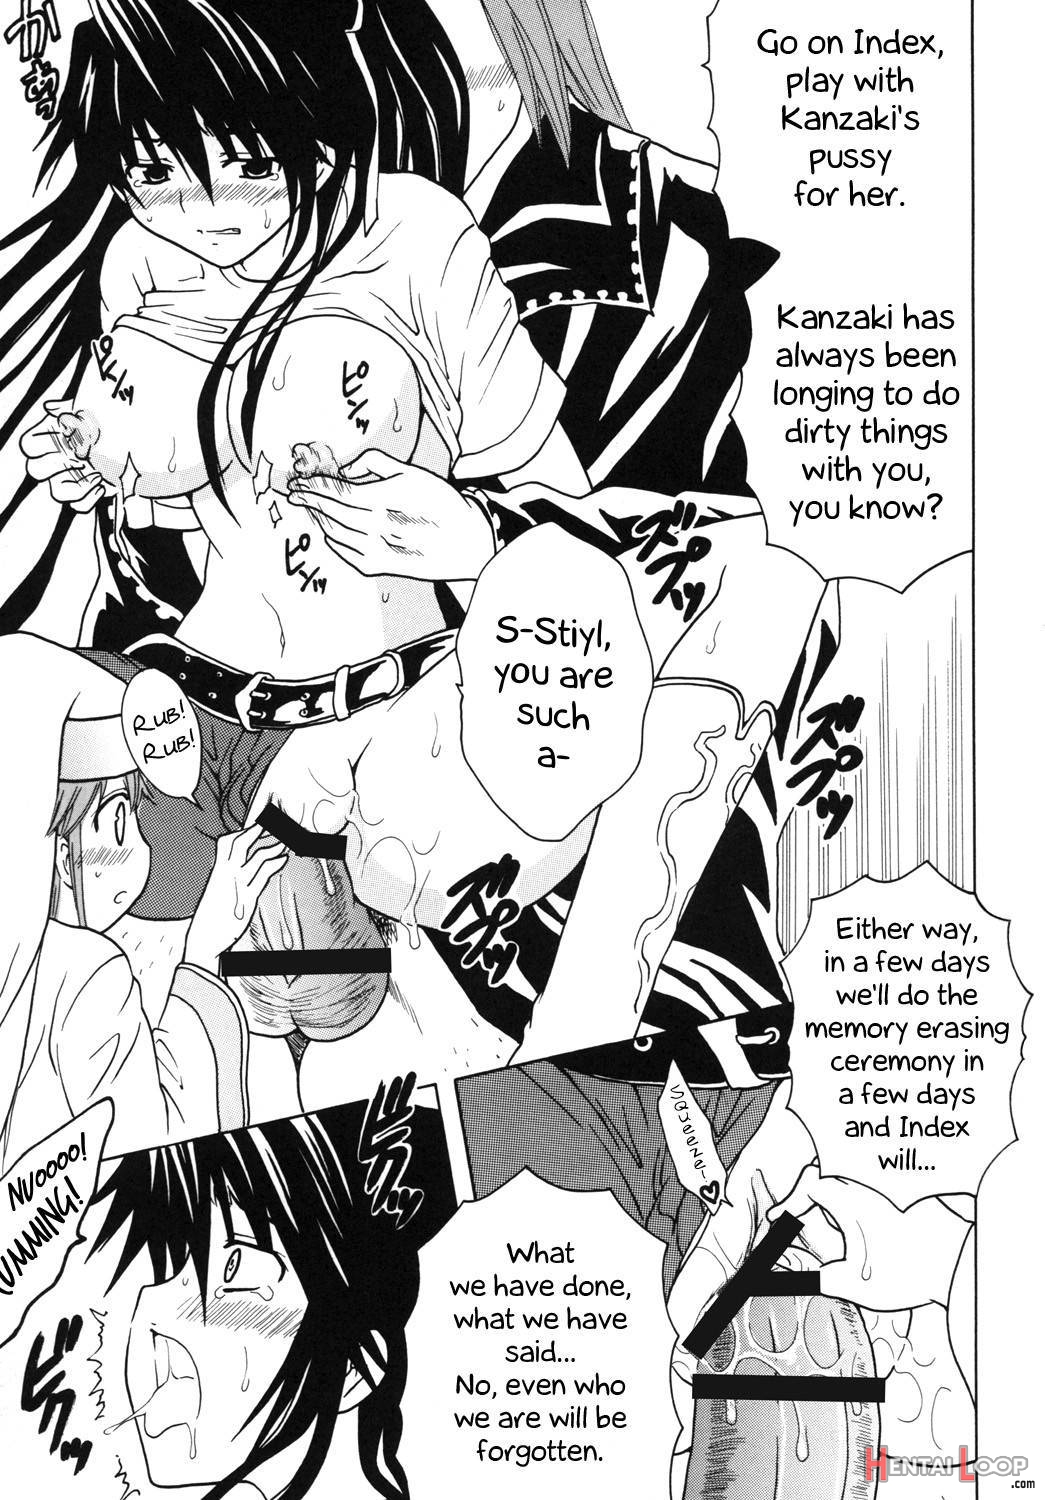 Toaru Otaku no Index #1 page 28